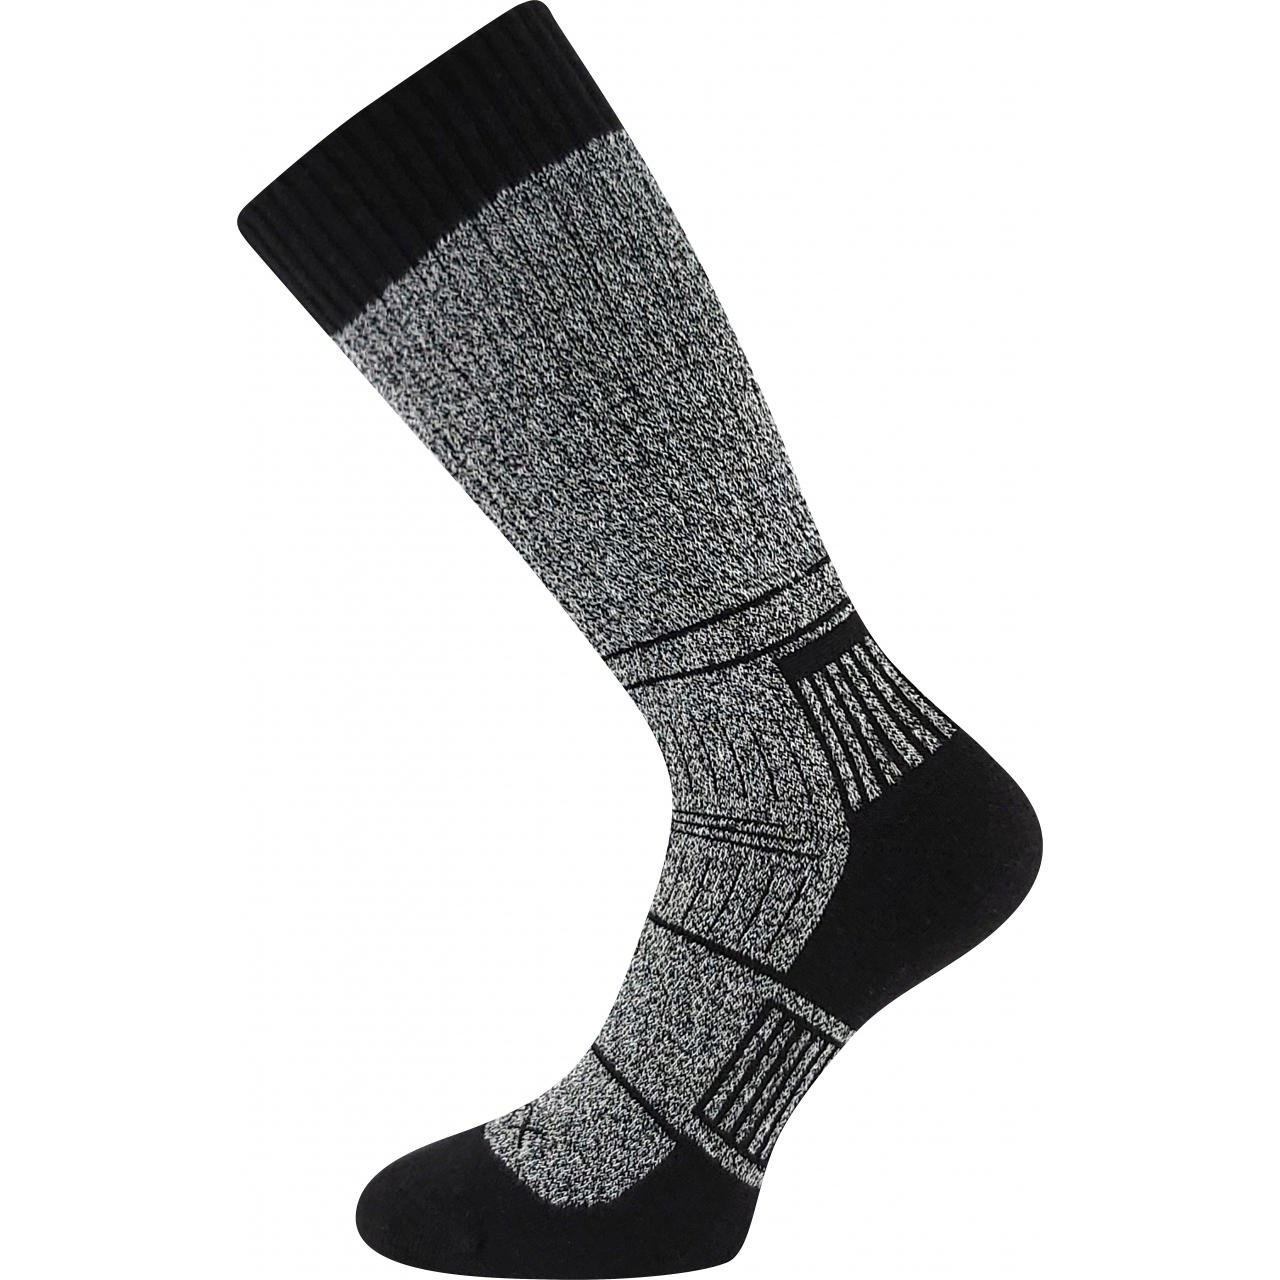 Ponožky unisex silné Voxx Carpatia - šedé-černé, 35-38